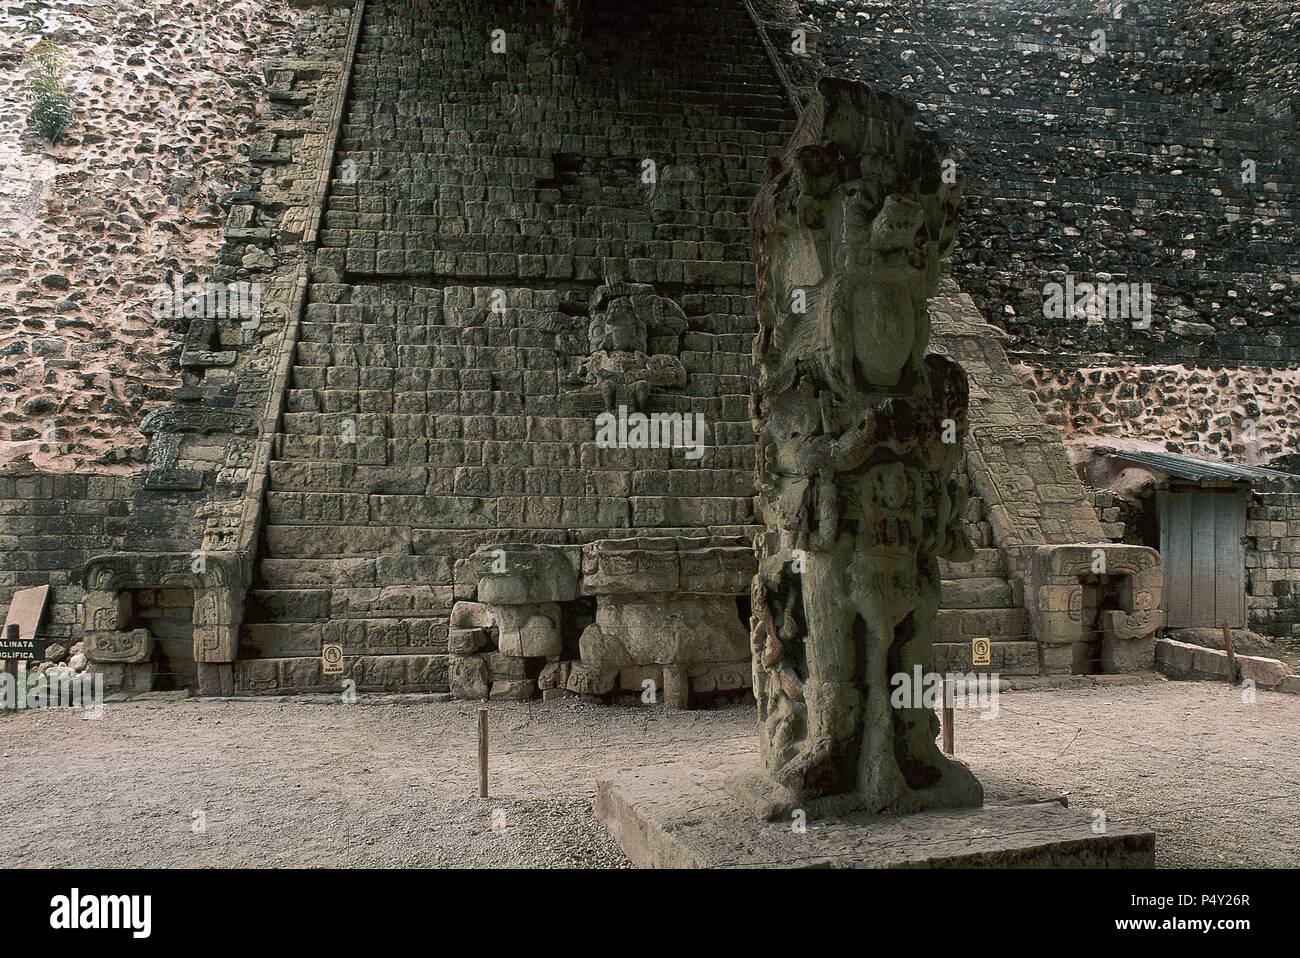 ARTE PRECOLOMBINO. MAYA. SITIO ARQUEOLOGICO DE COPAN. Una de las cuatro ciudades más importantes de la cultura maya. Su época de esplendor se dió entre el 460 y 801. Vista general de la 'ESTELA M'. Al fondo, la escalinata de los jeroglíficos. Frontera occidental de HONDURAS. Stock Photo